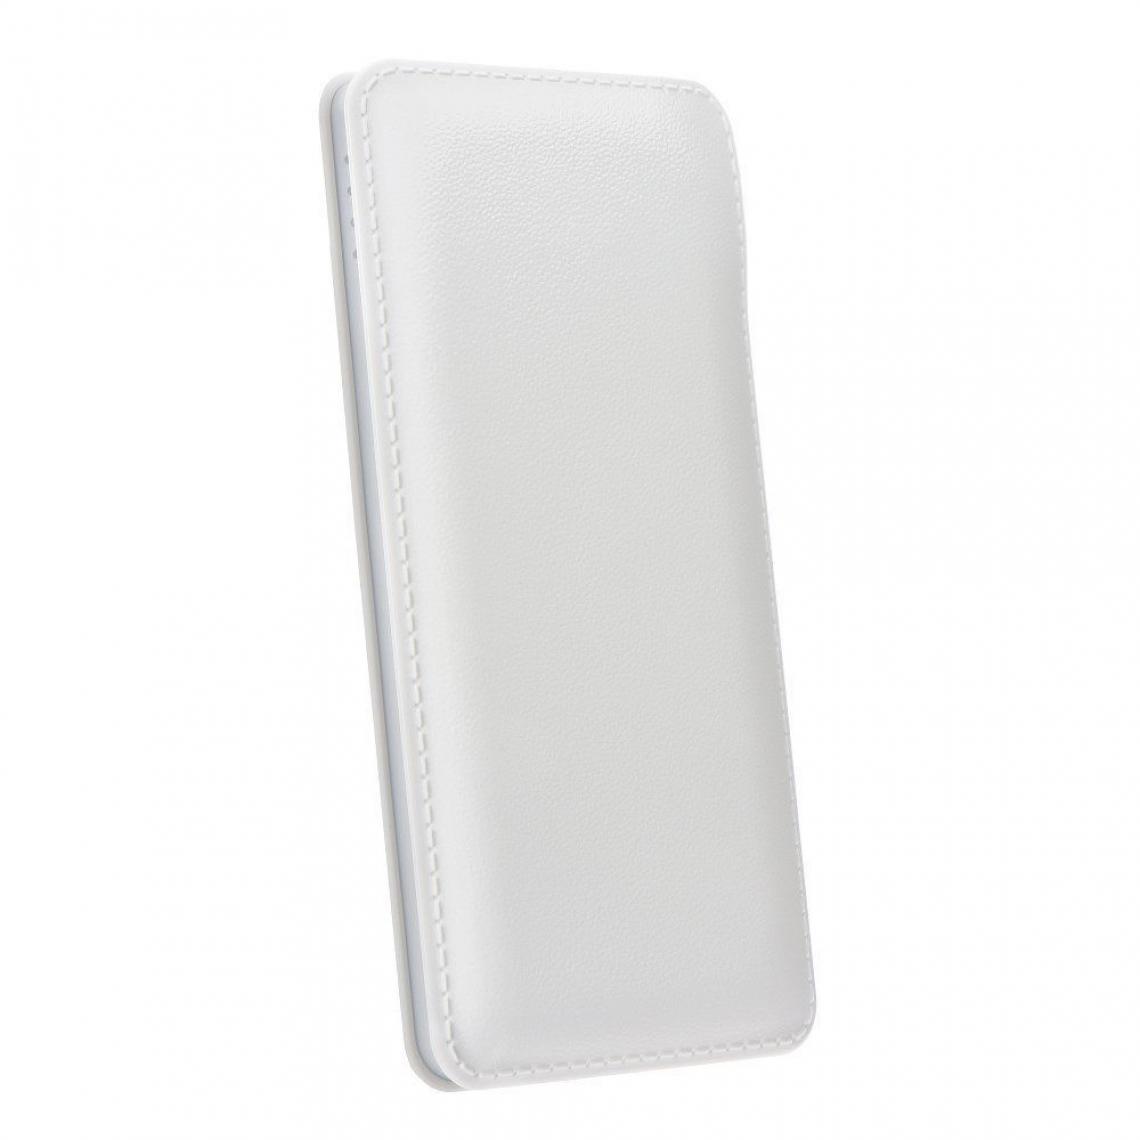 Ozzzo - Chargeur batterie externe 10000mAh powerbank ozzzo blanc pour Chuwi HiPad X - Autres accessoires smartphone